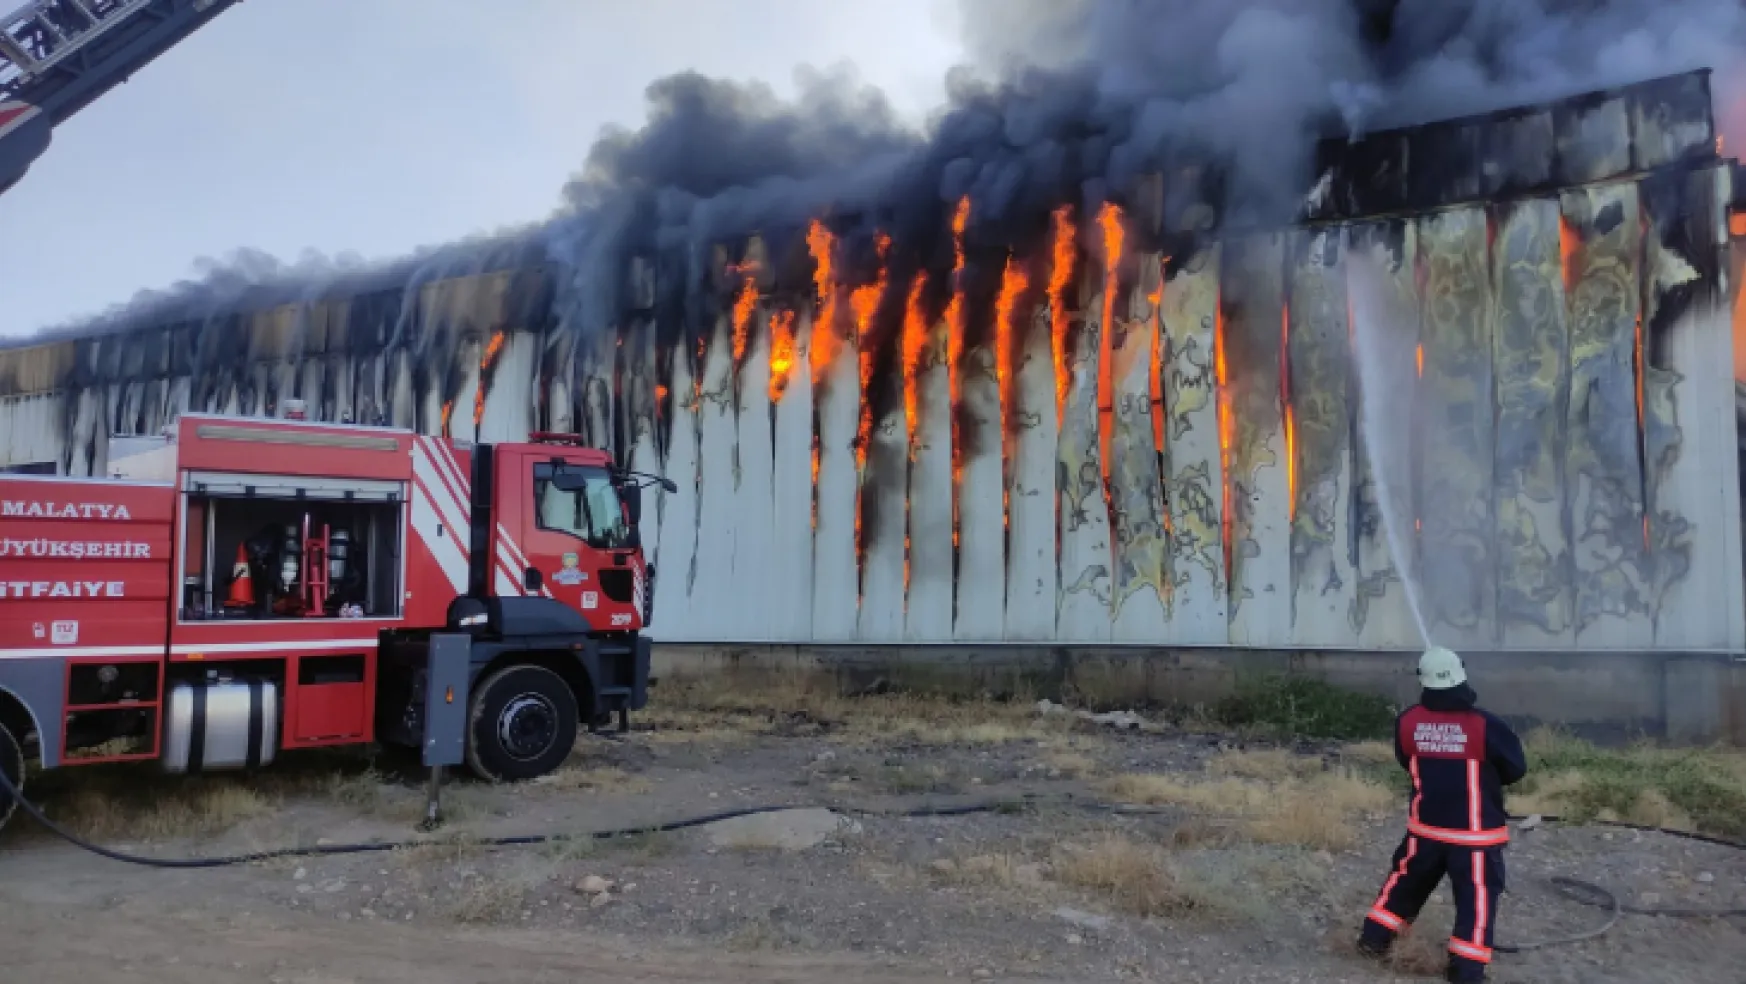 Malatya 2. Organize Sanayi Bölgesin de depo tamamen yandı